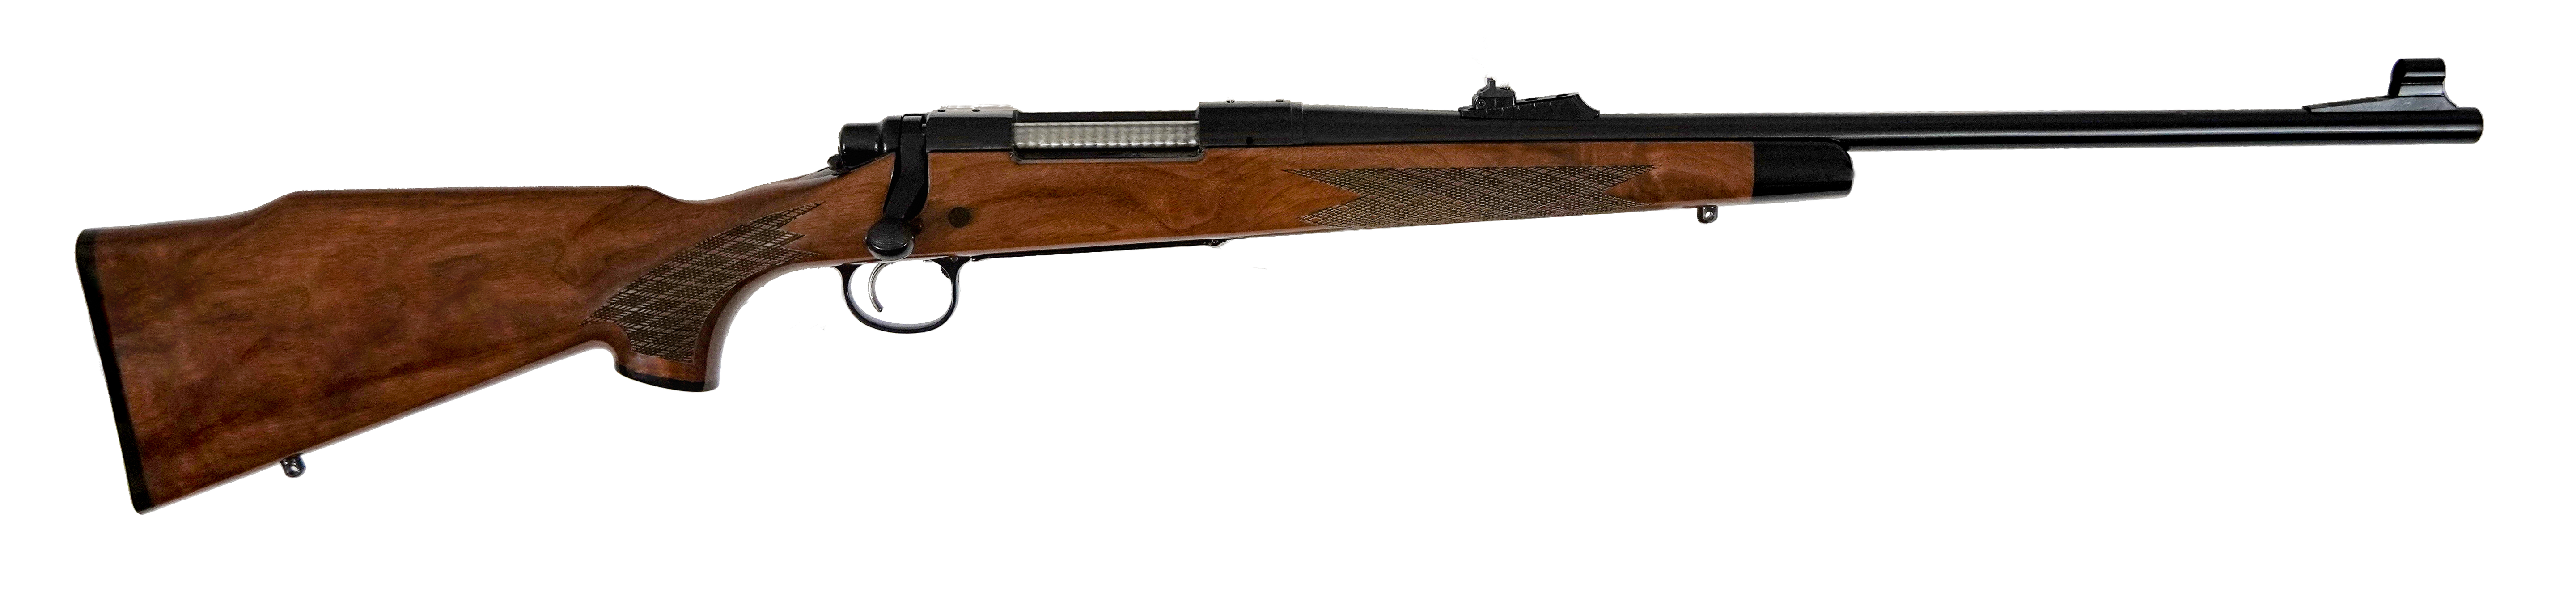 Remington 700 BDL